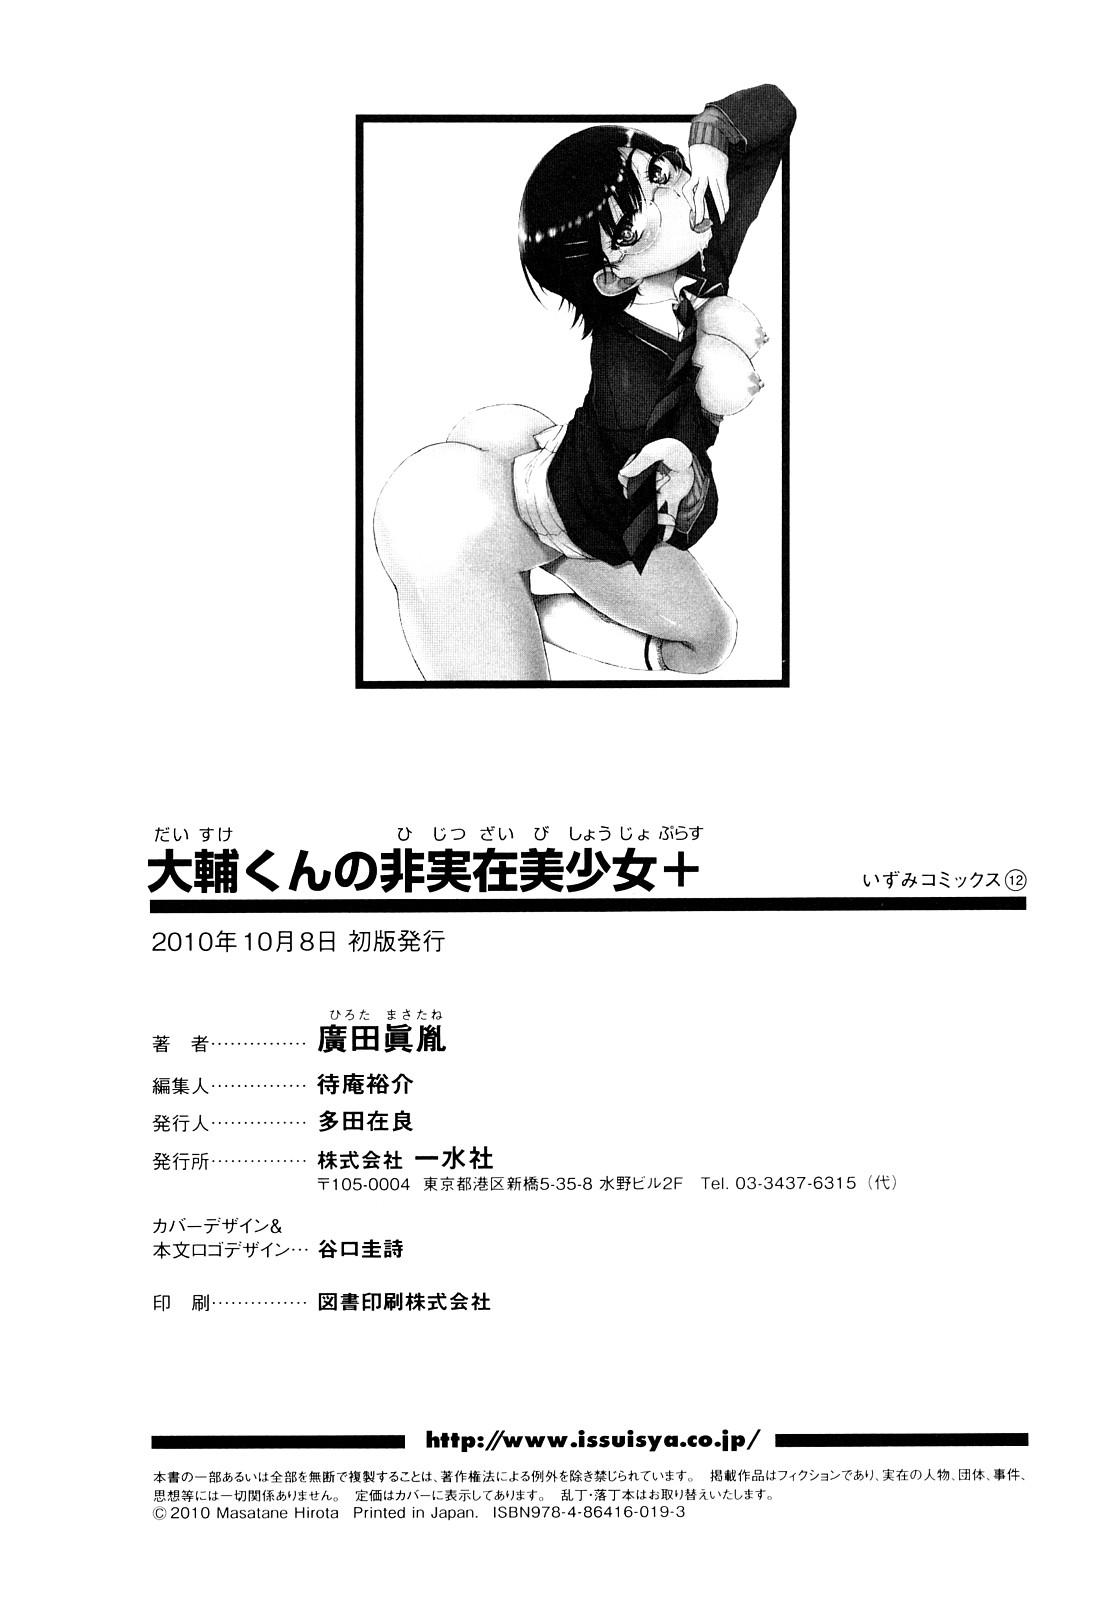 Daisuke-kun no Hijitsuzai Bishoujo Plus | 大輔君和不存在美少女+ 179